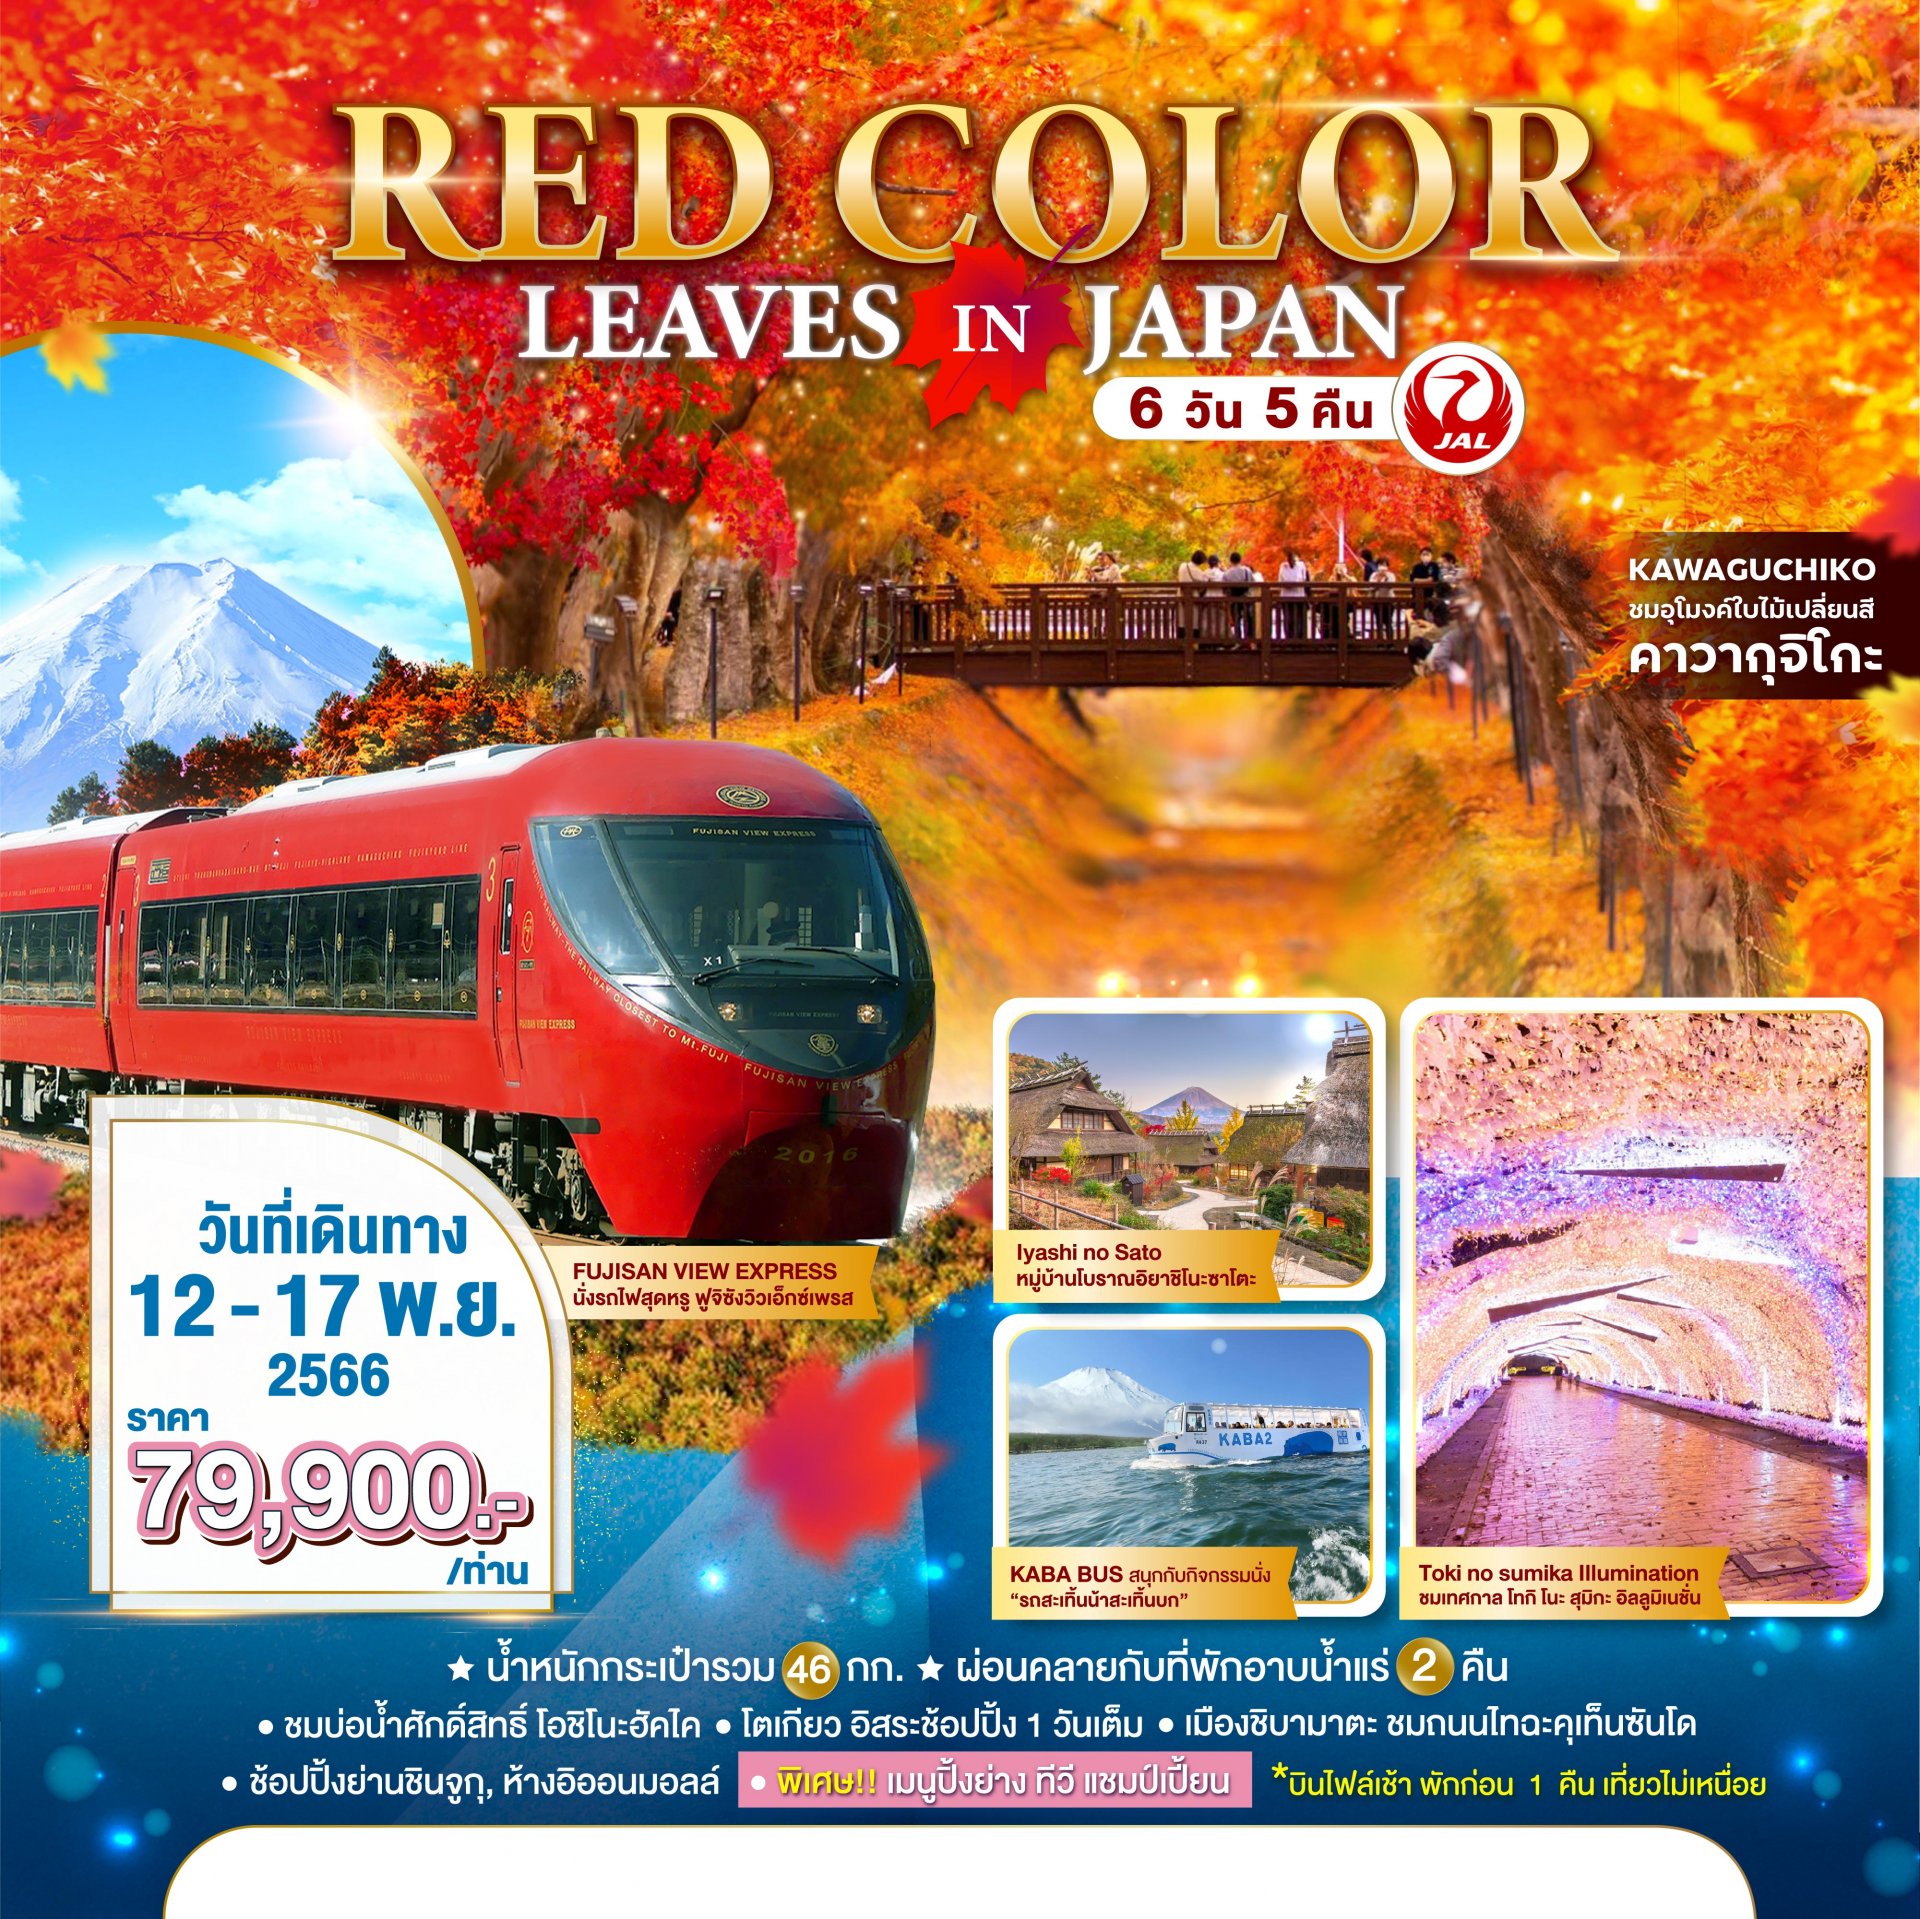 ทัวร์ญี่ปุ่น : RED COLOR LEAVES IN JAPAN 6 DAYS 5 NIGHTS